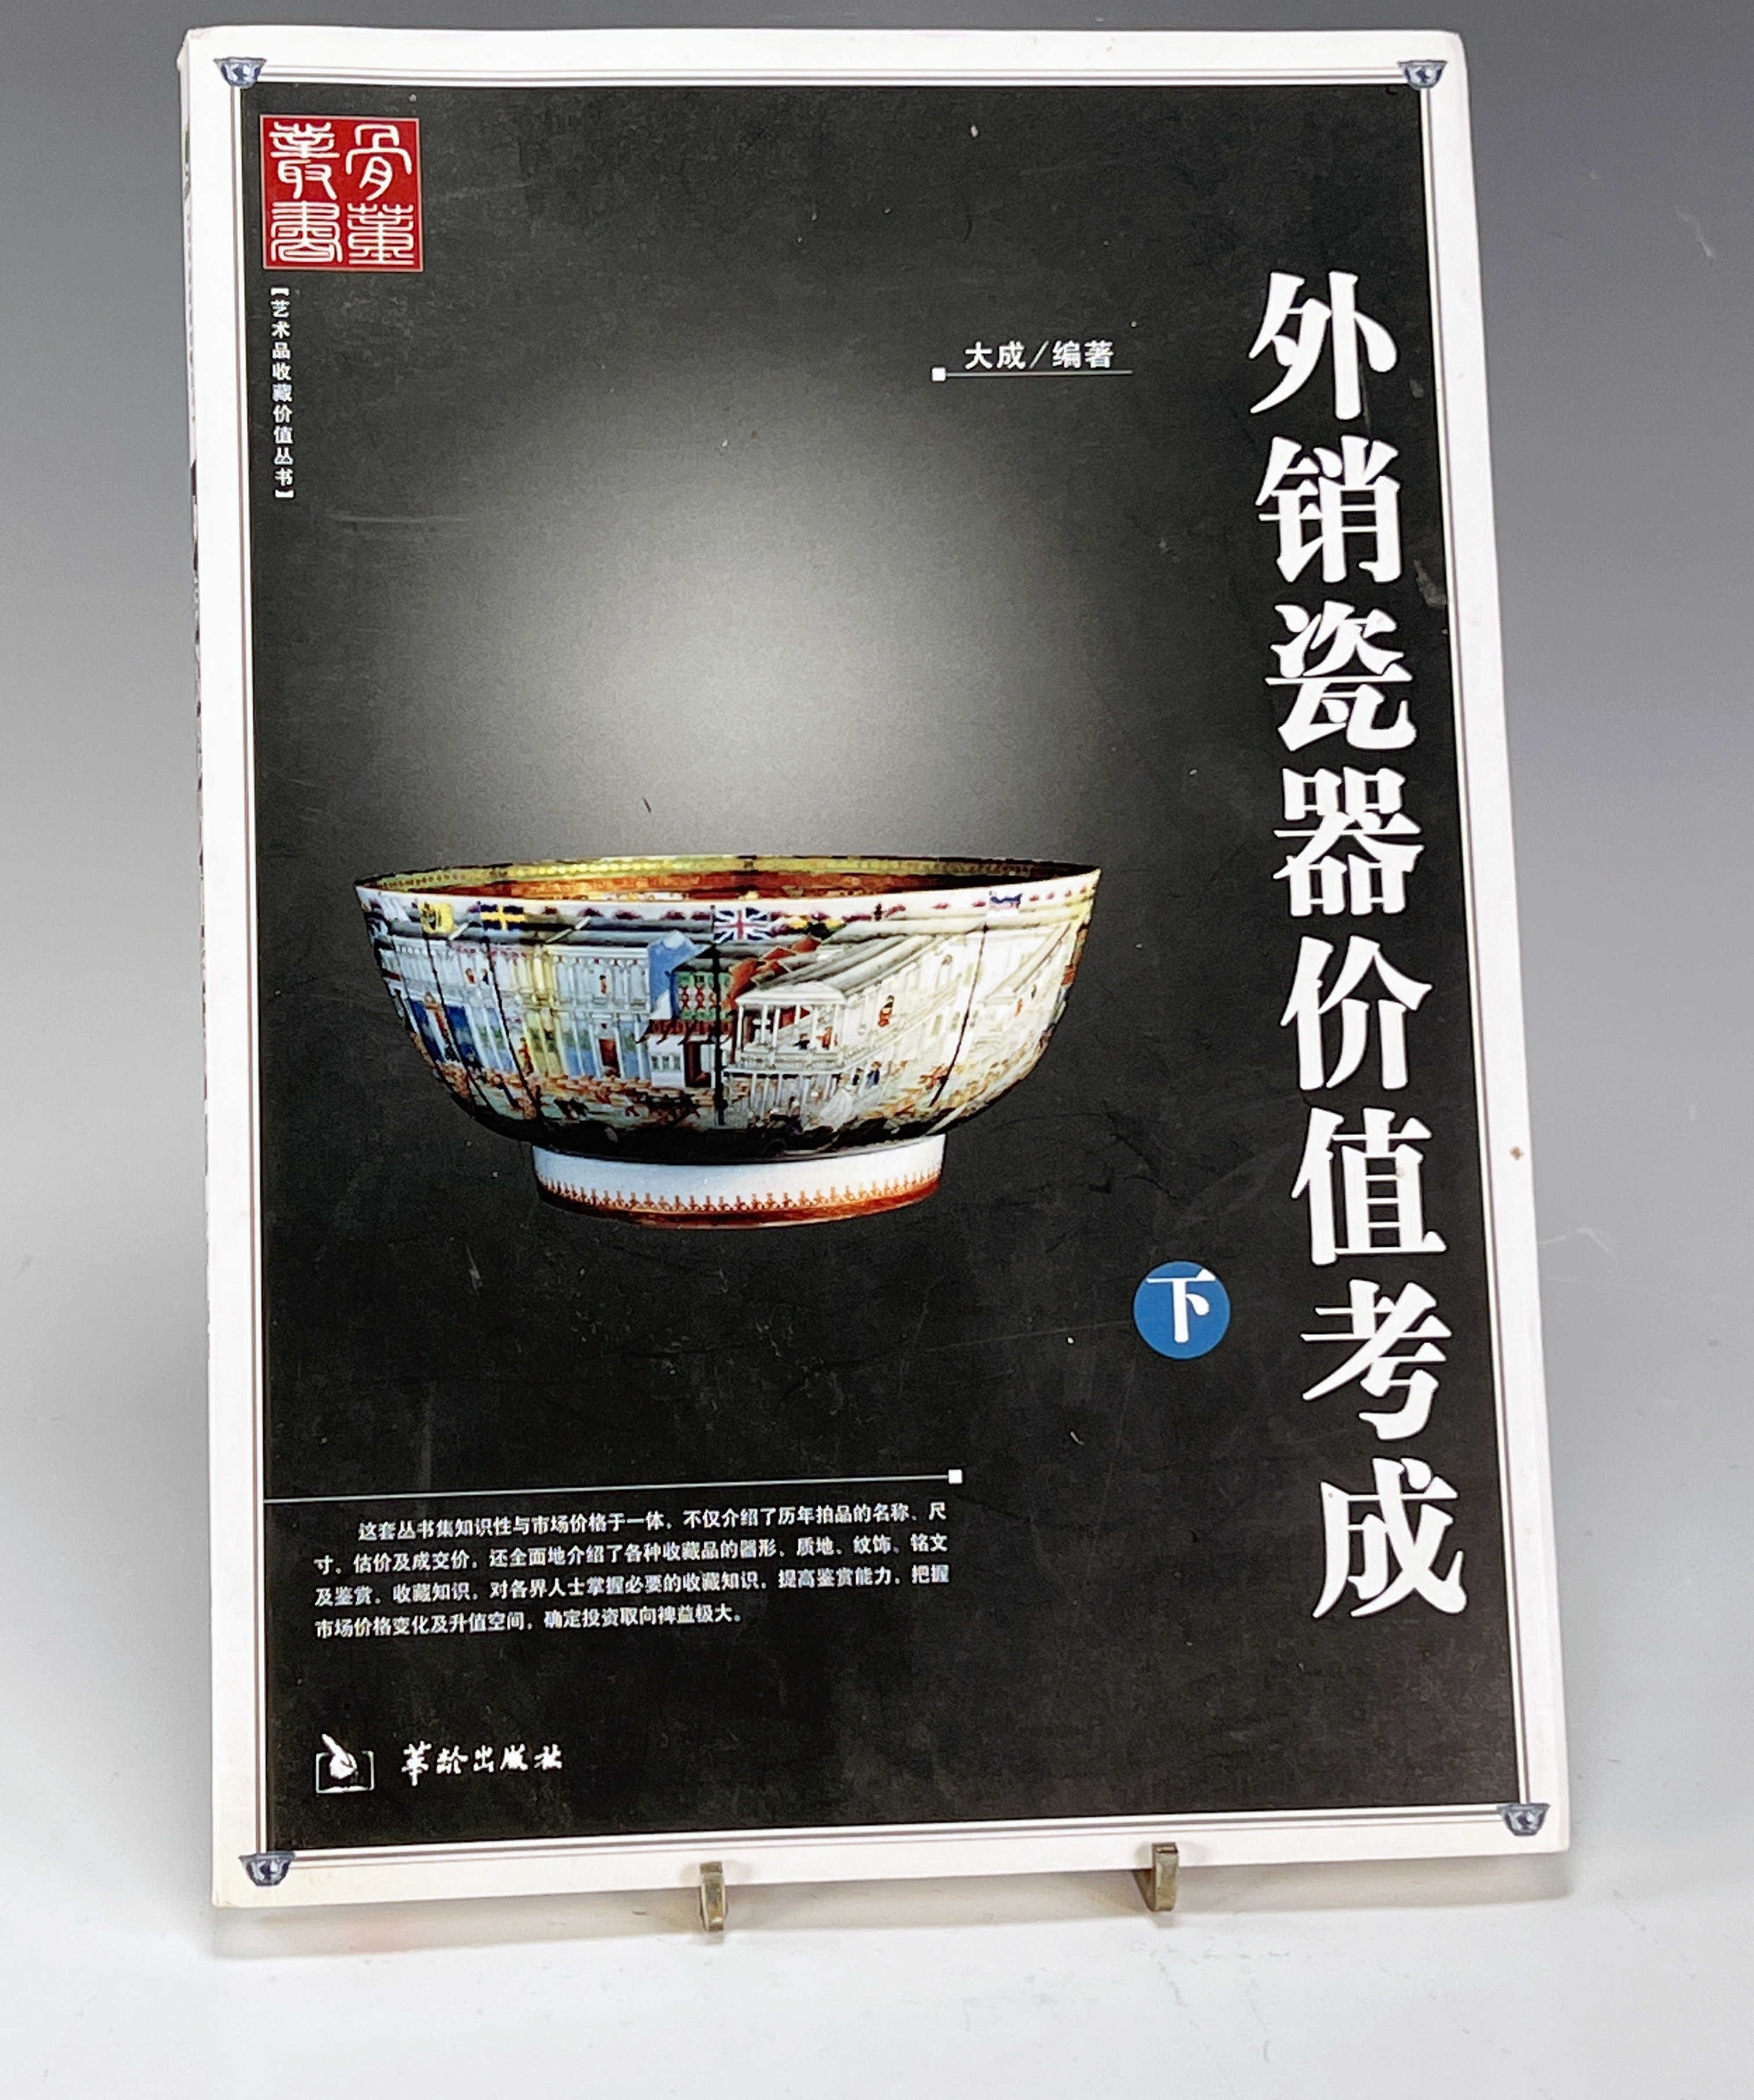 Chinese Auction Catalog image 1